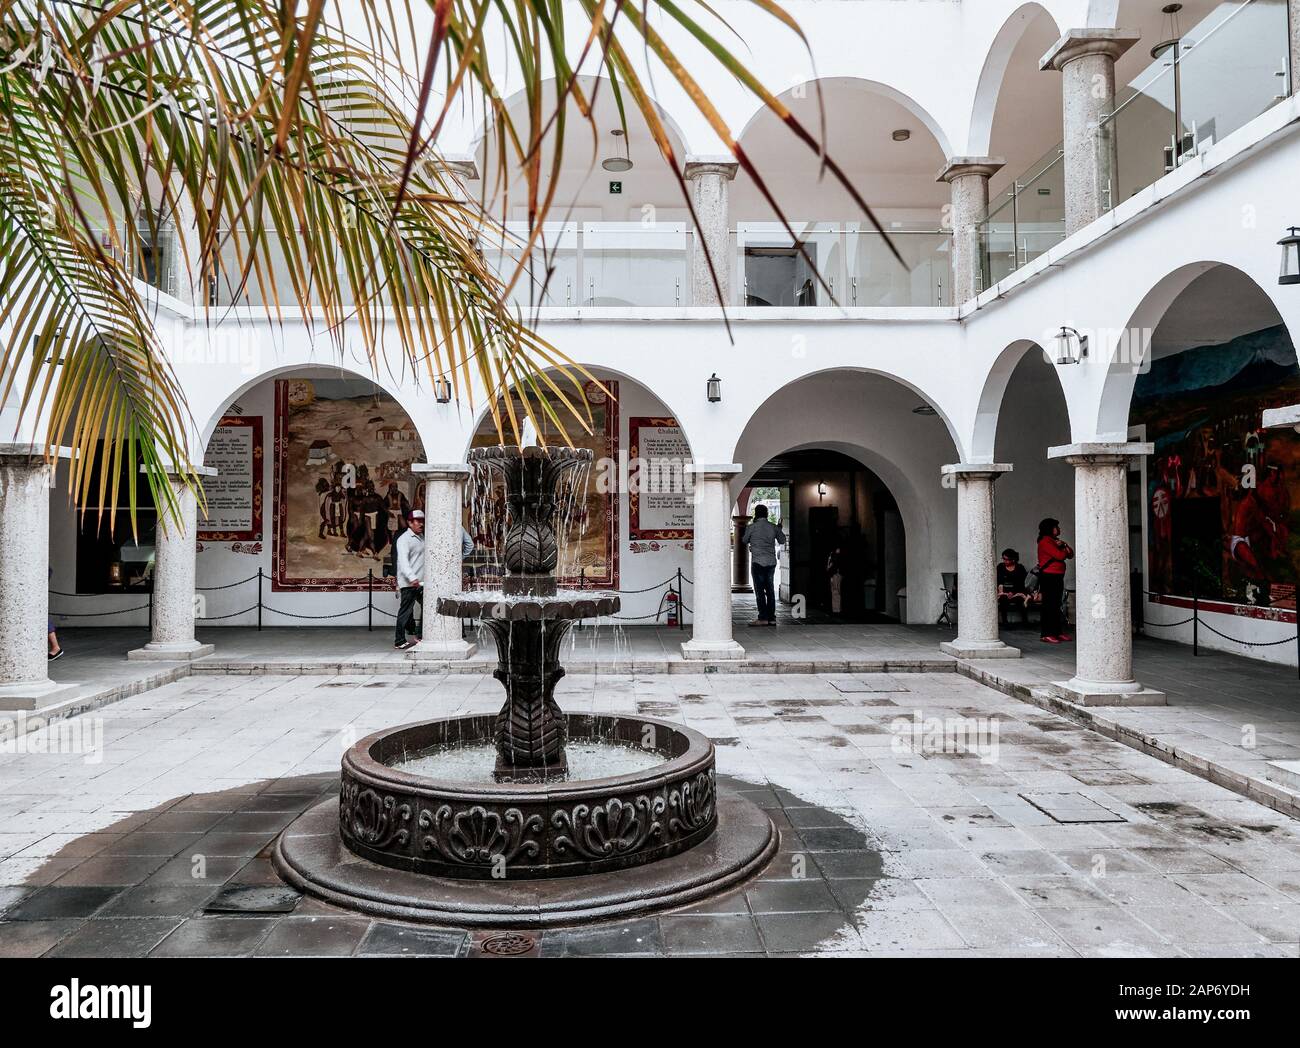 San Pedro Cholula, Messico, 17 ottobre 2018 - Colonnata con archi, fontana e palme nella piazza interna del municipio di San Pedro Cholula. Foto Stock